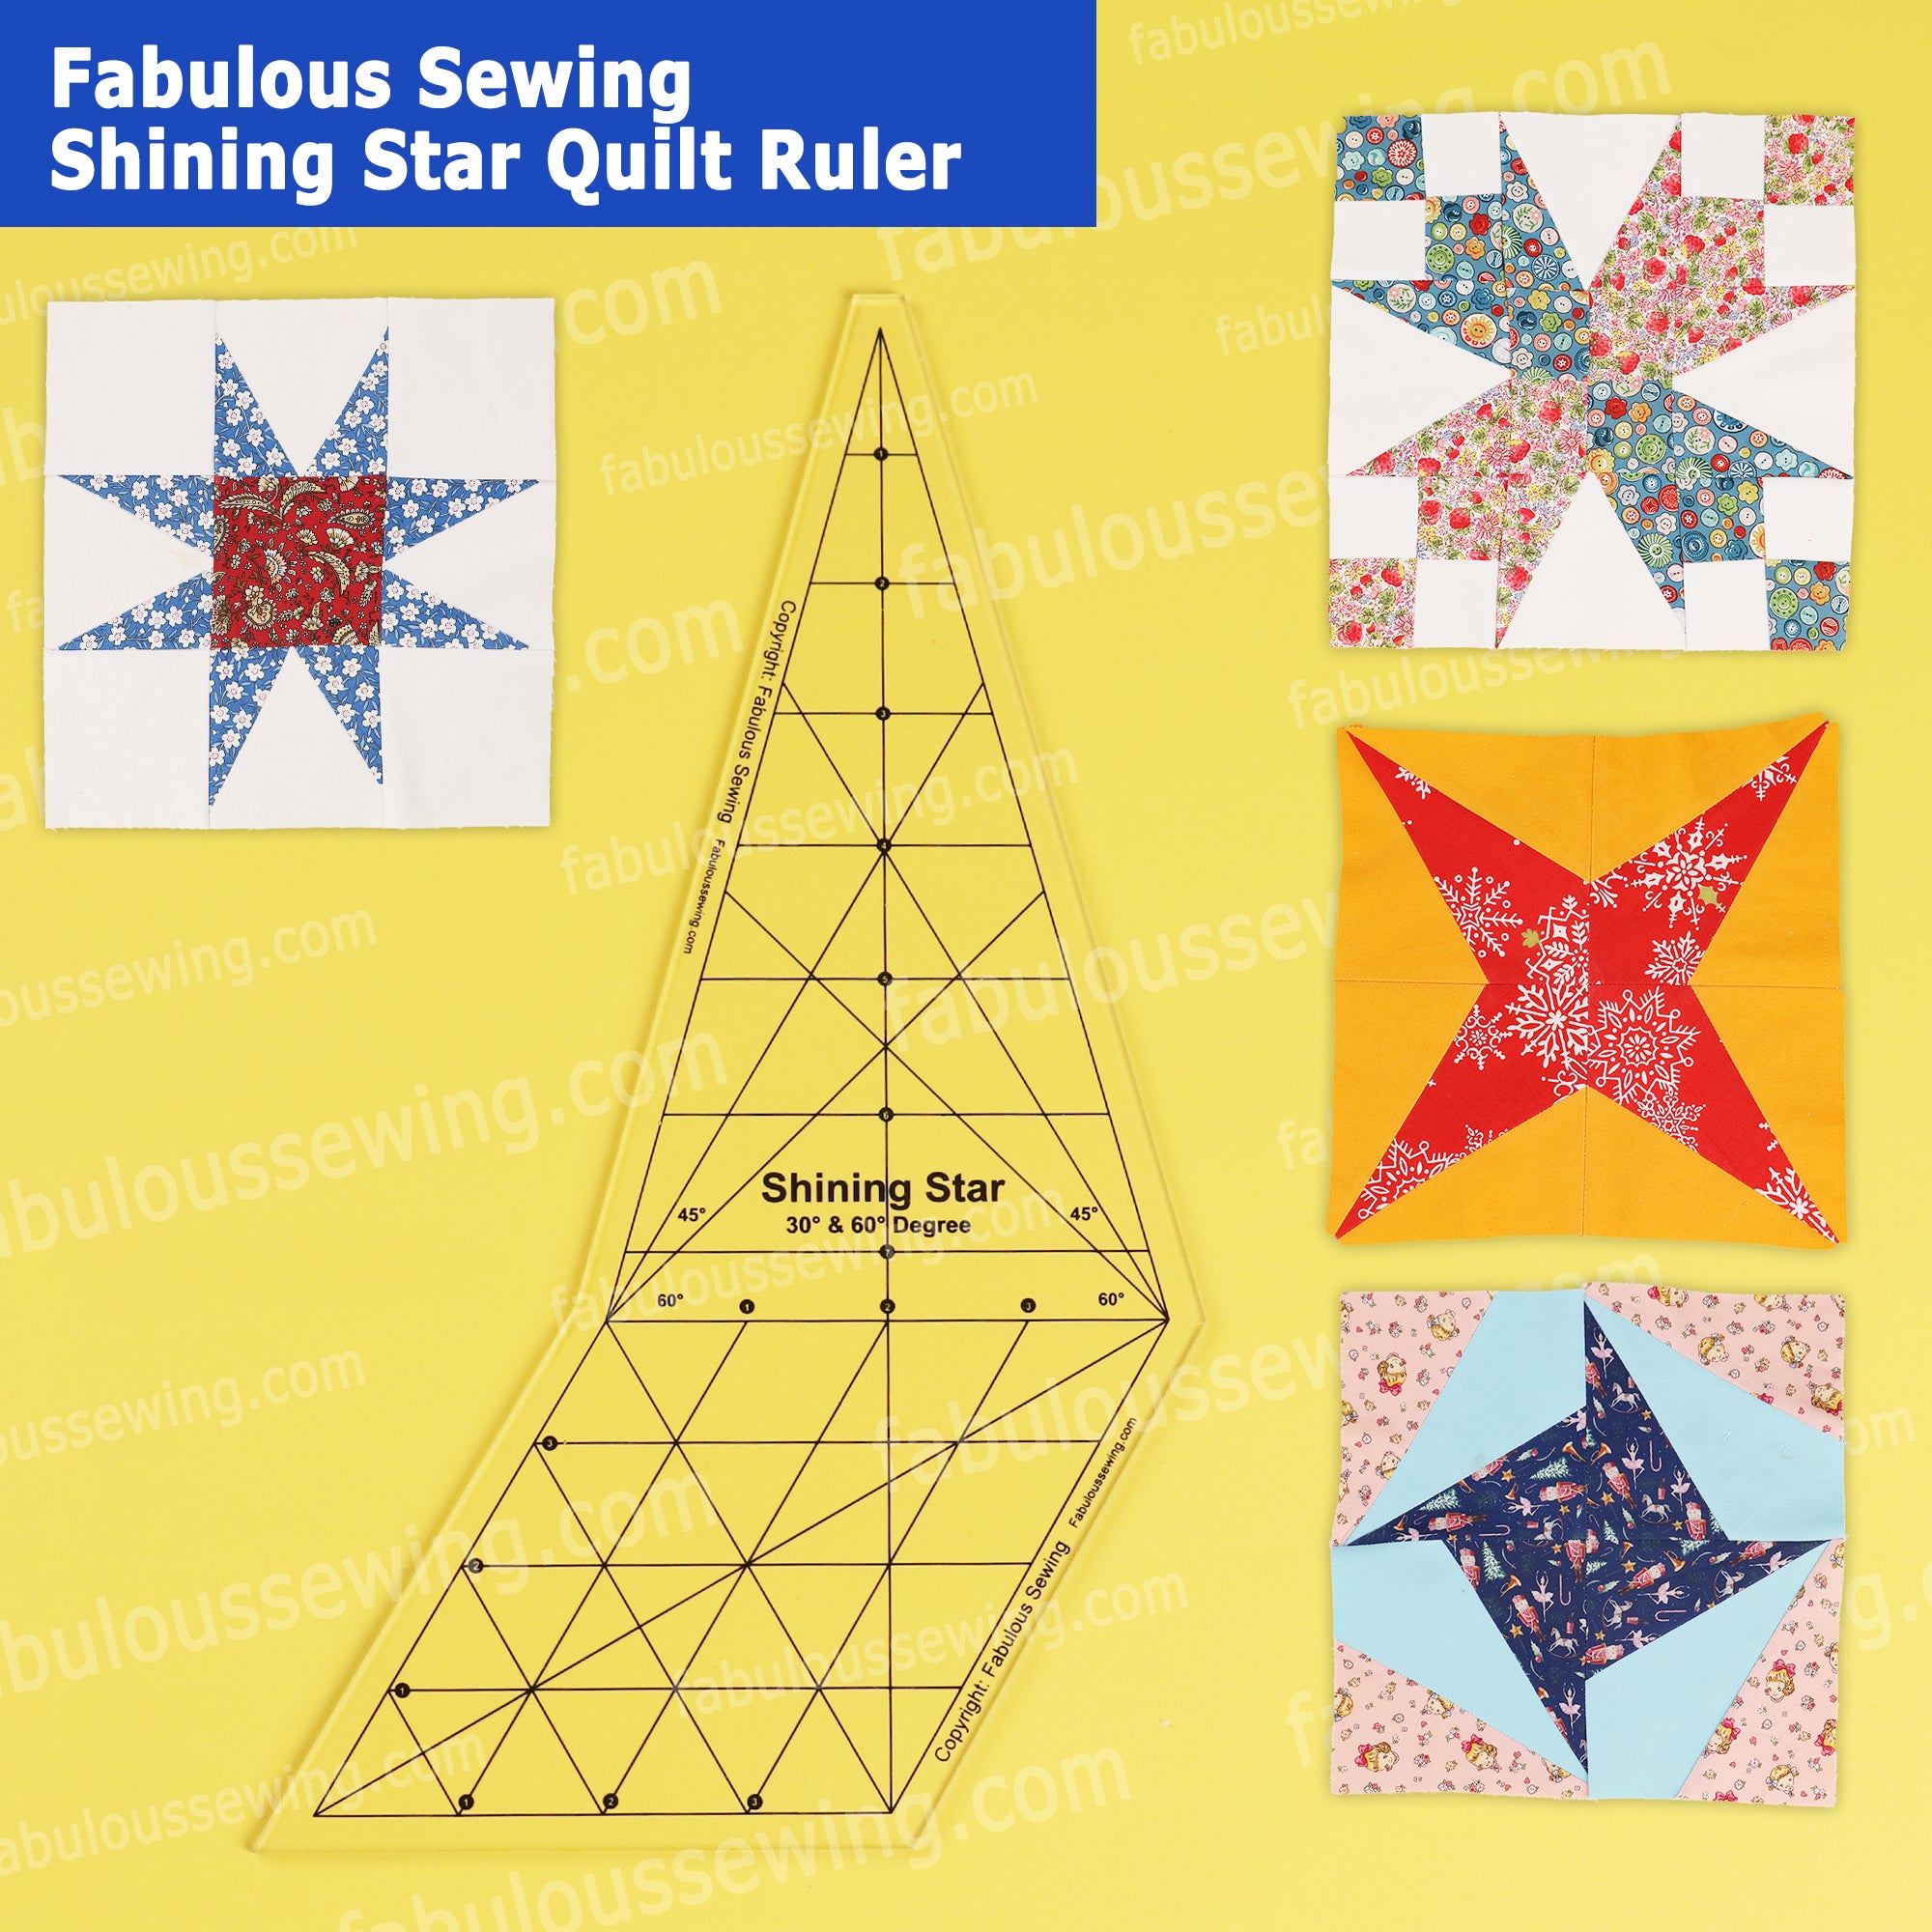 Fabulous Sewing Shining Star Quilt Ruler